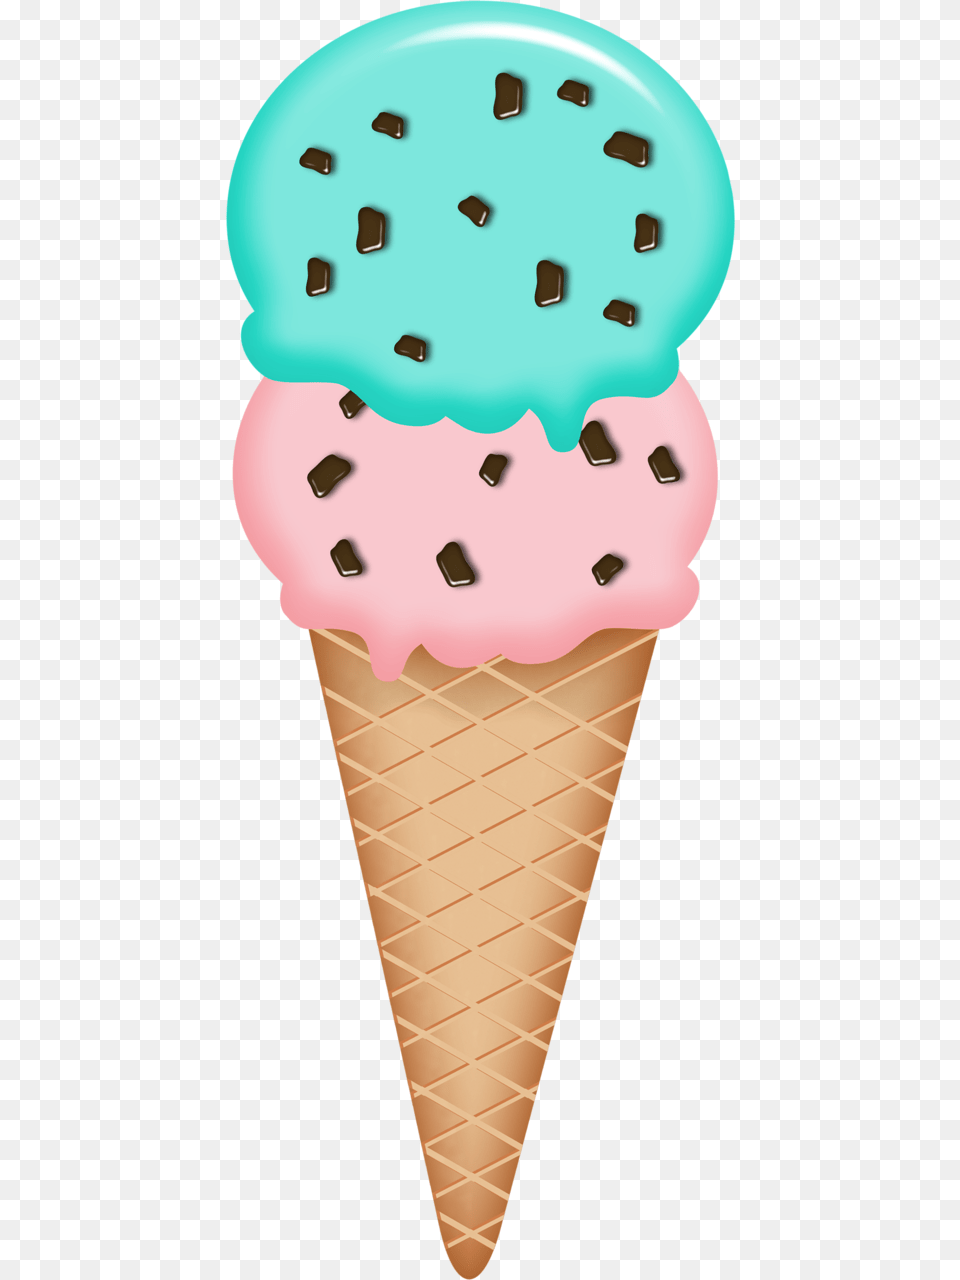 Oreo Ice Cream Clipart, Dessert, Food, Ice Cream, Cone Free Transparent Png